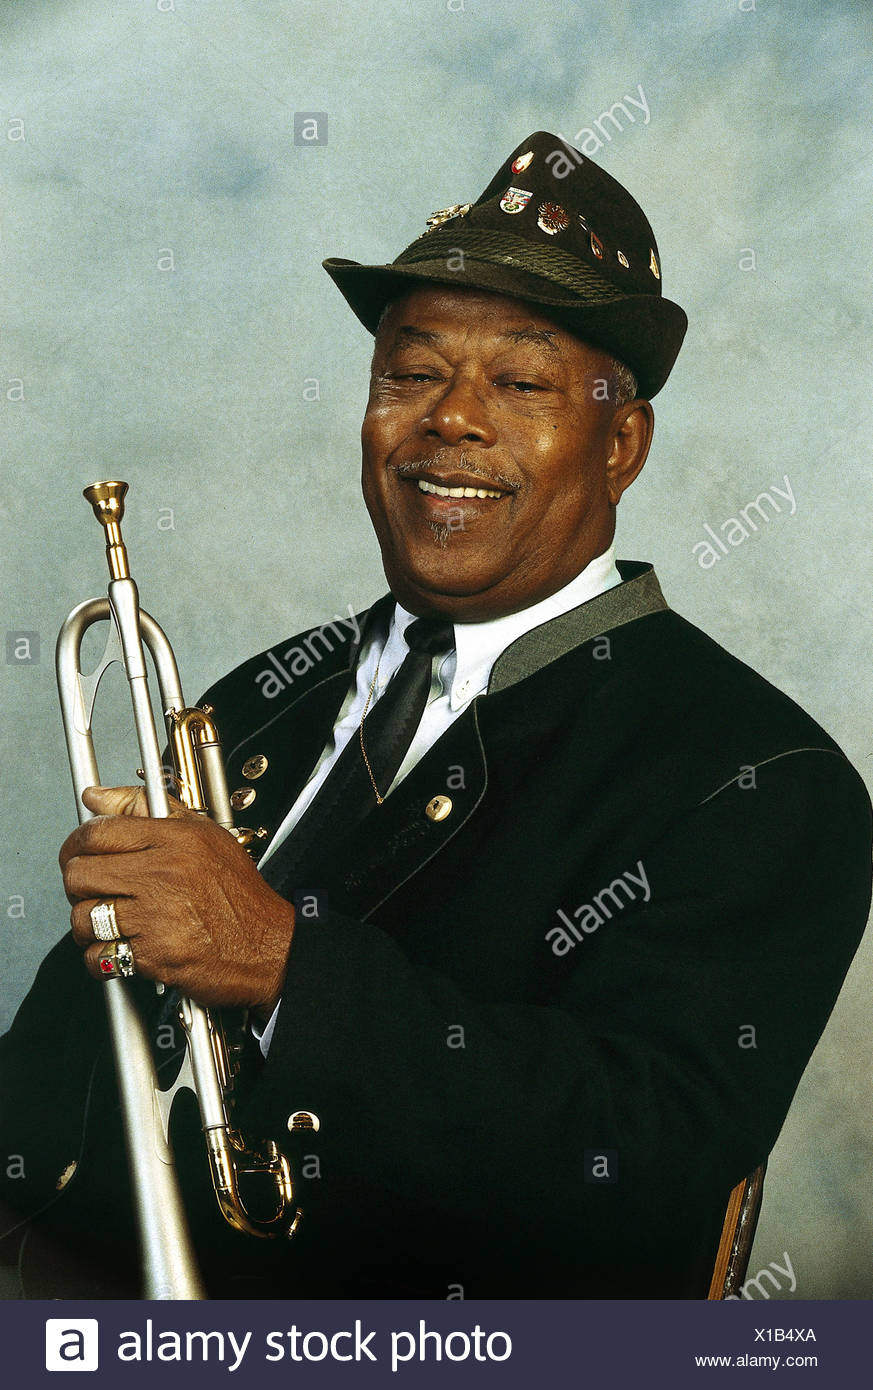 https://c8.alamy.com/compde/x1b4xa/mo-billy-2221923-1672004-deutscher-musiker-jazz-trompeter-als-peter-mico-joachim-auf-trinidad-halbe-lange-geboren-mit-trompete-1995-additional-rights-spiel-na-x1b4xa.jpg